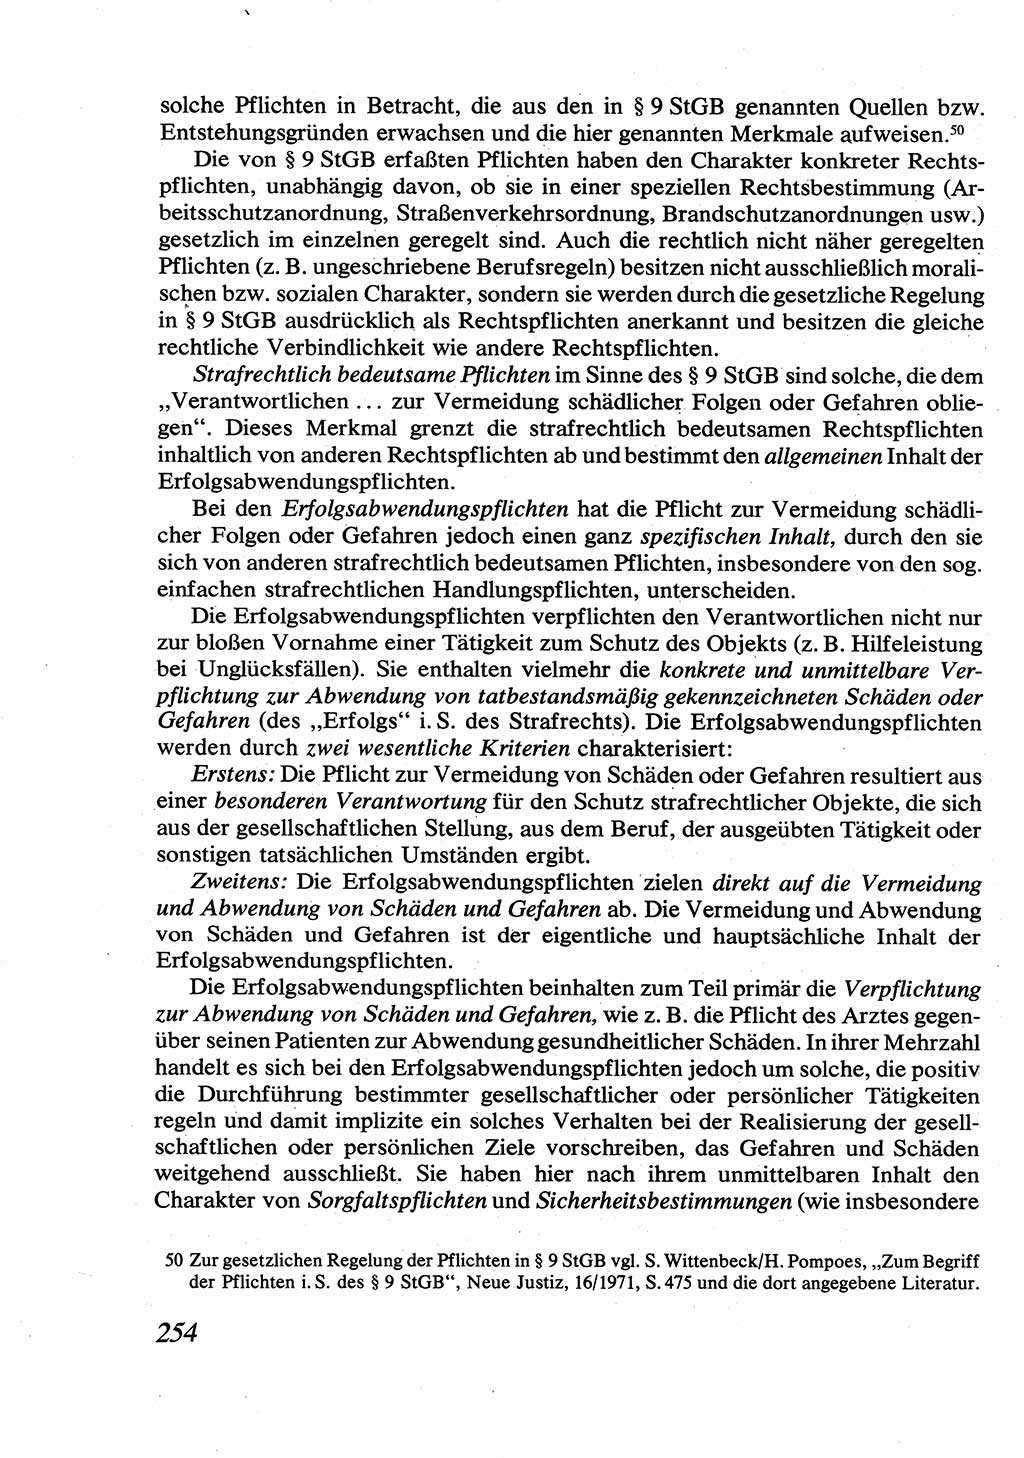 Strafrecht [Deutsche Demokratische Republik (DDR)], Allgemeiner Teil, Lehrbuch 1976, Seite 254 (Strafr. DDR AT Lb. 1976, S. 254)